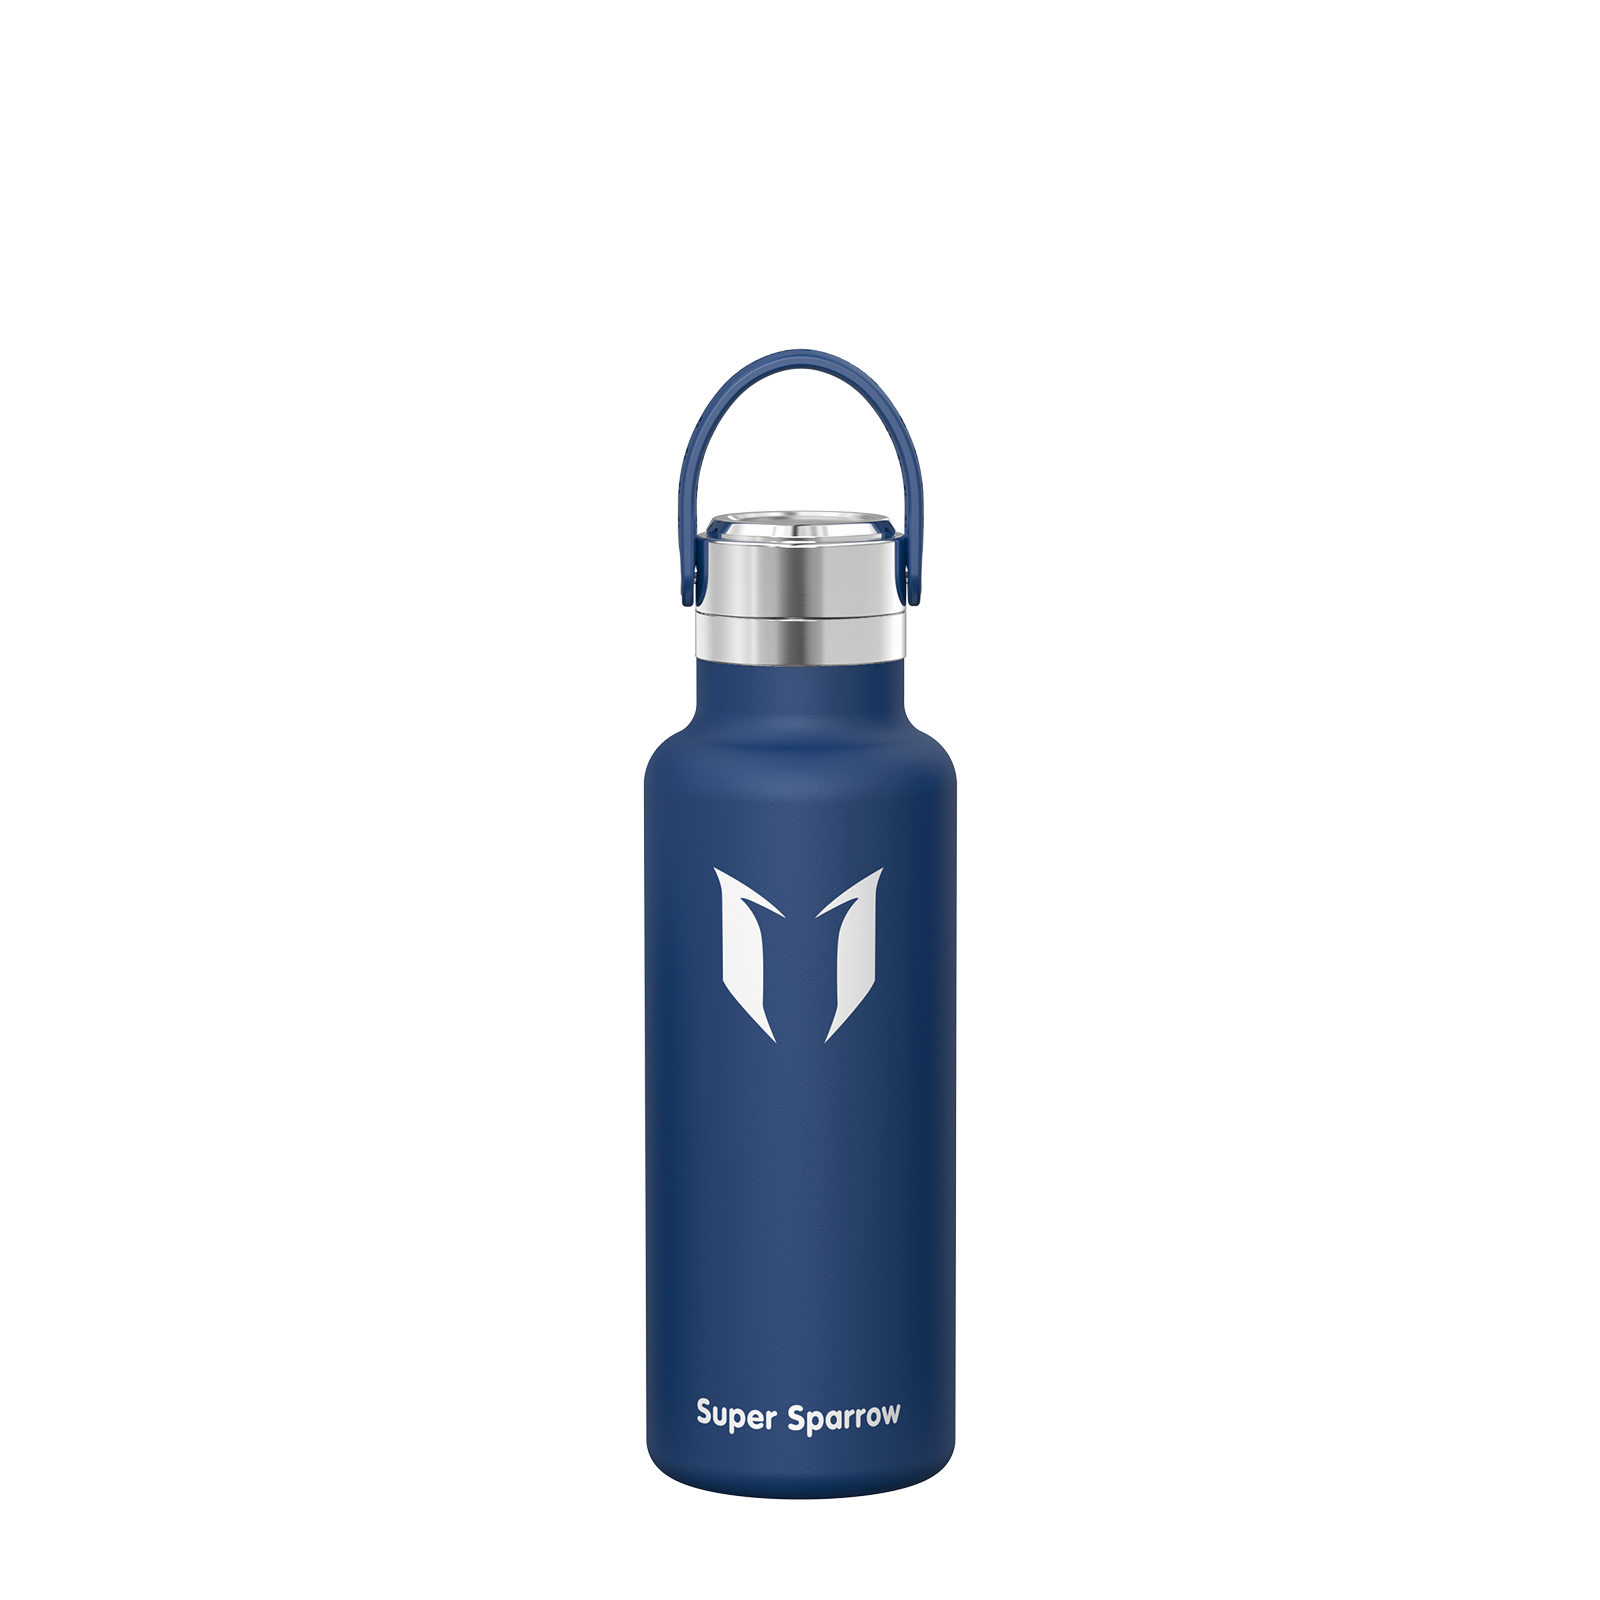  Super Sparrow Botella de agua deportiva – 11.8 fl oz – No  tóxico sin BPA y plástico de copoliéster Tritan ecológico – Para correr,  gimnasio, yoga, aire libre y camping 